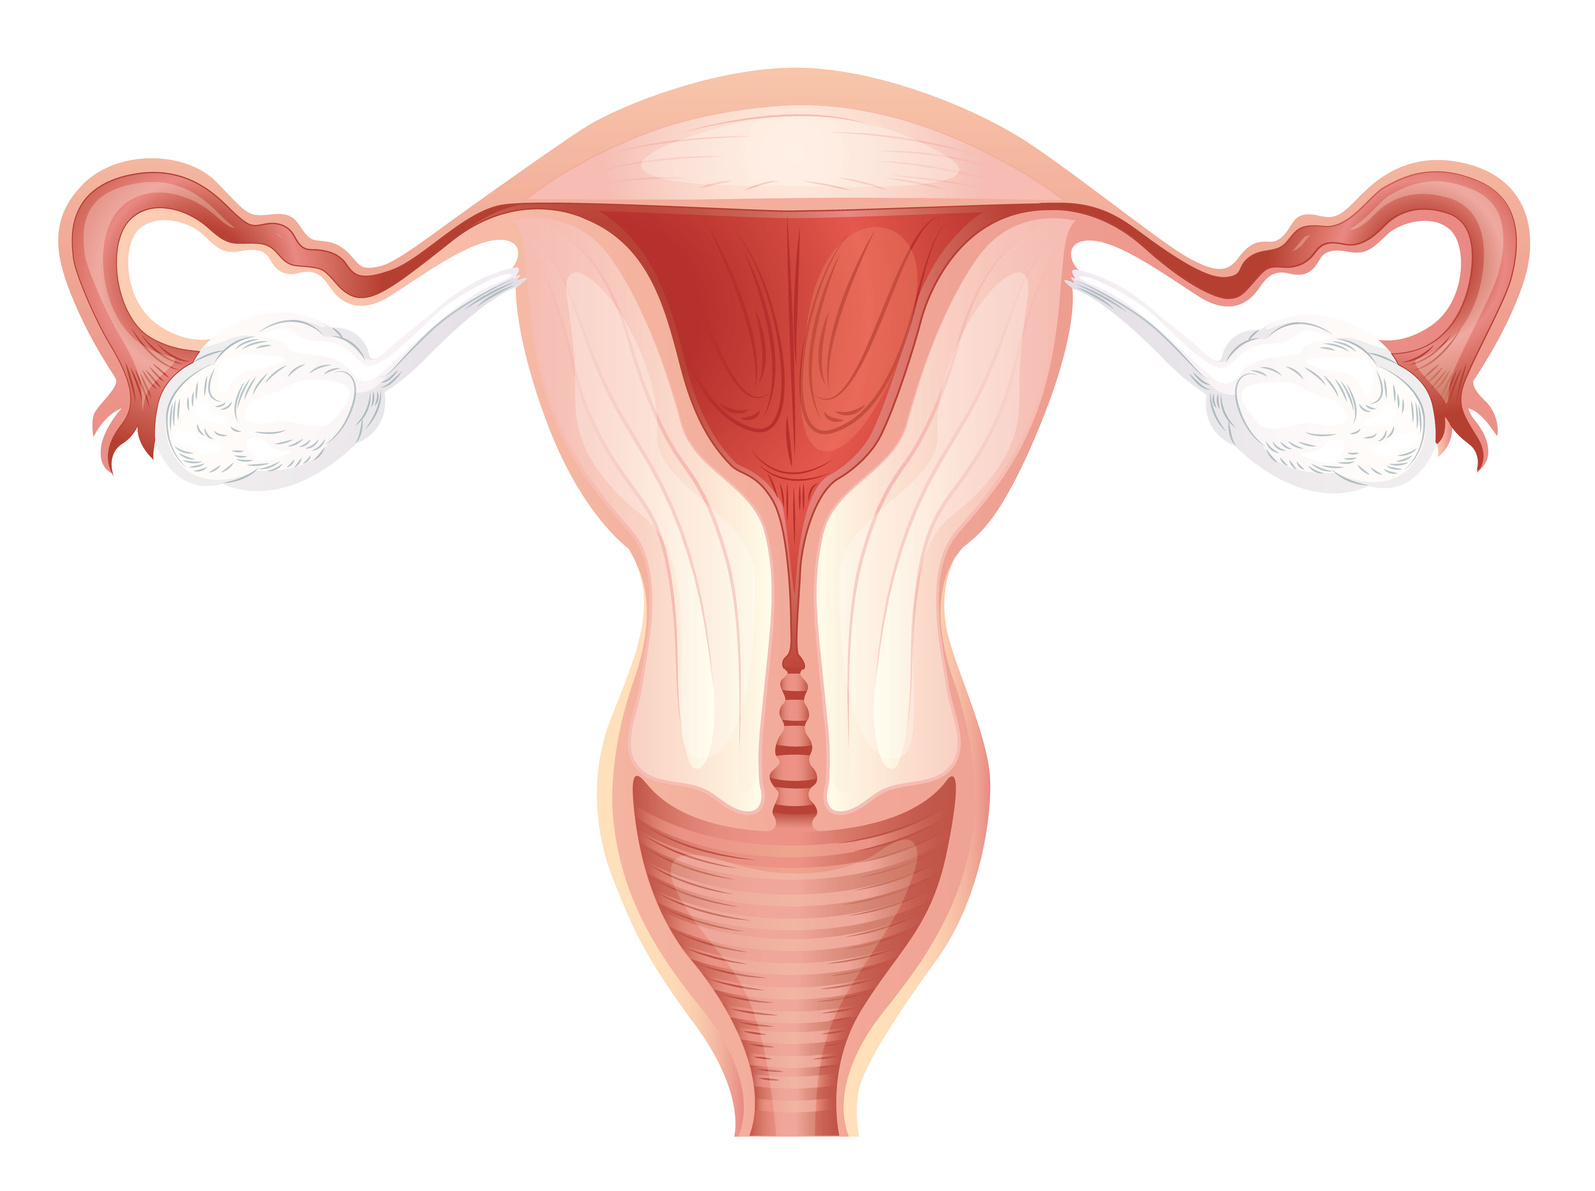 ¿A partir de qué medida se considera un endometrio apto para la implantación?